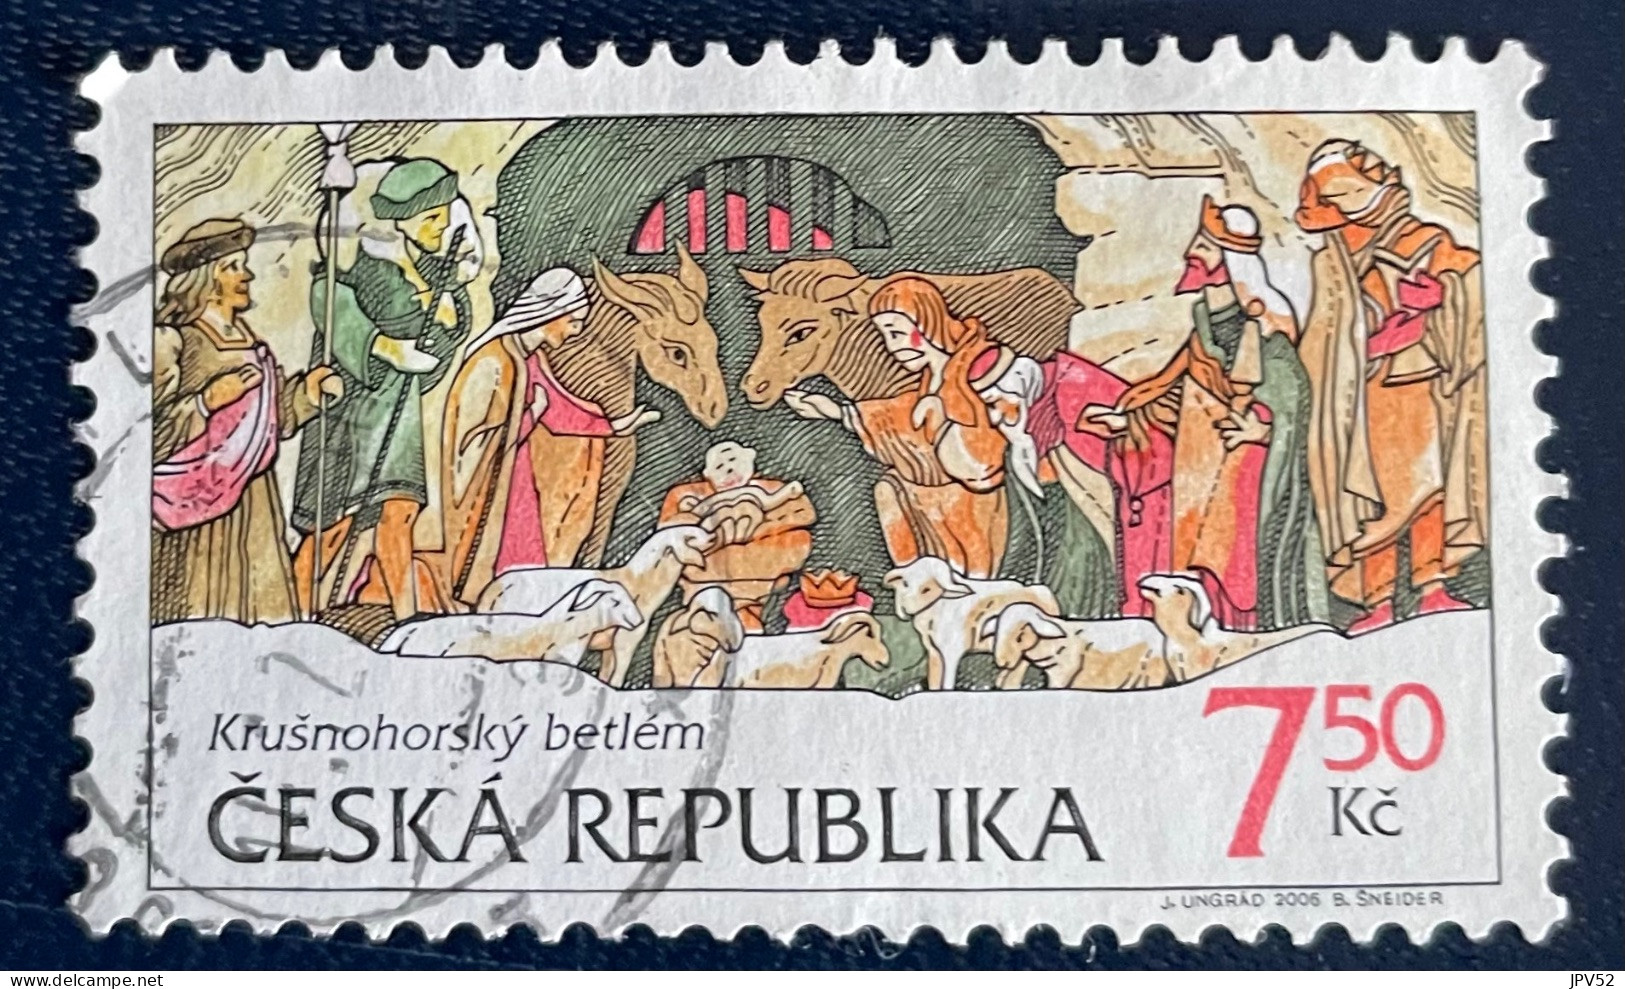 Ceska Republika - Tsjechië - C4/6 - 2006 - (°)used - Michel 496 - Kerstmis - Usati